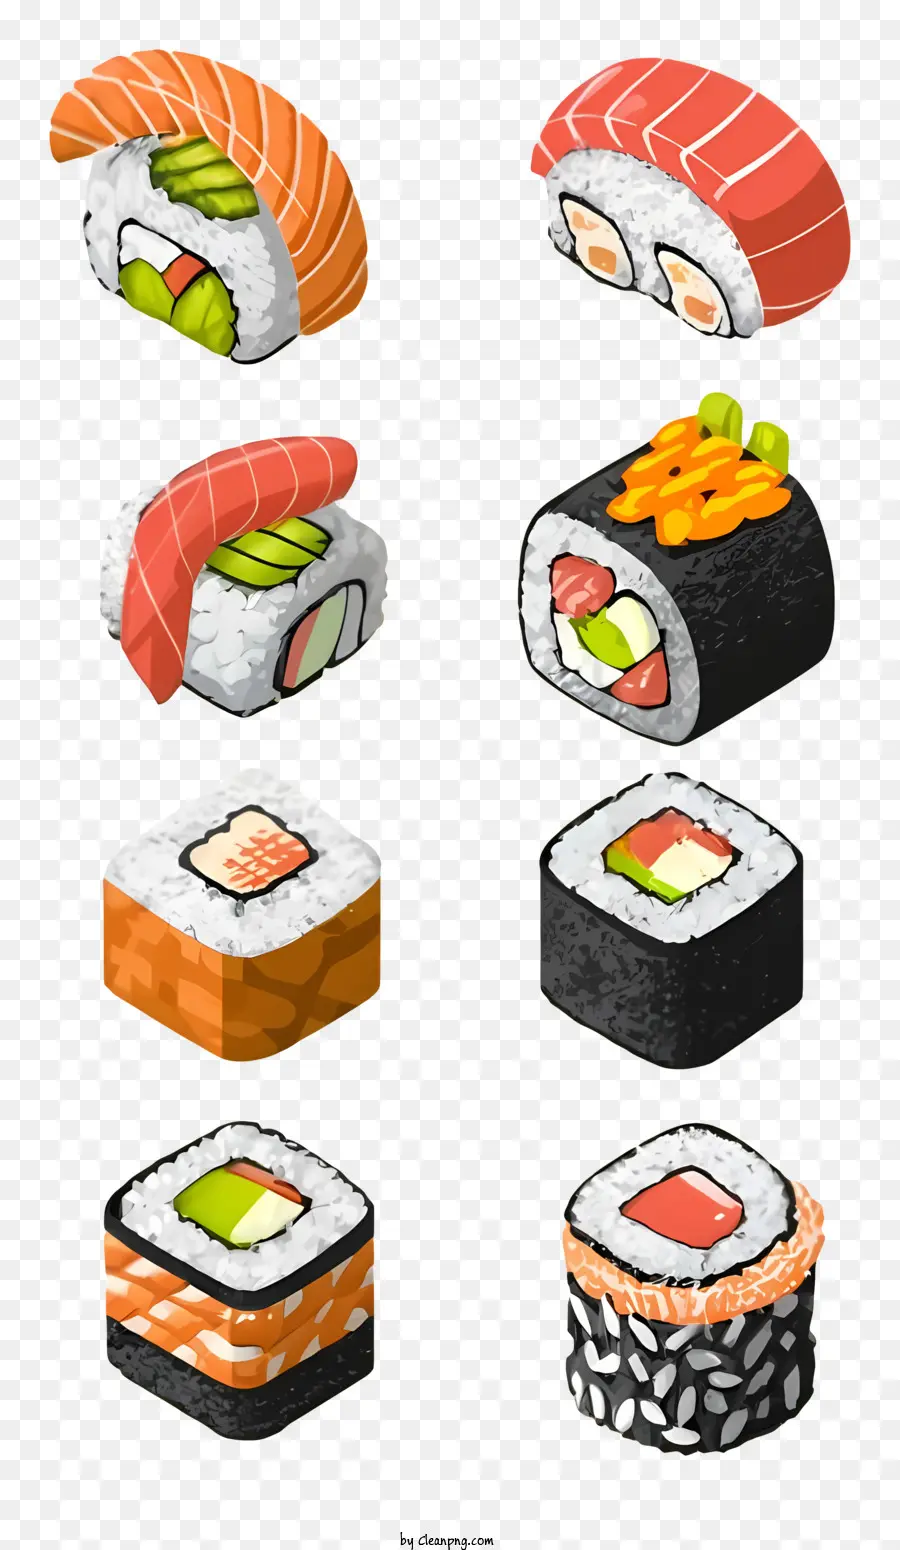 Sushi - Verschiedene Sushi -Rollen auf schwarzer Teller und Ingwer